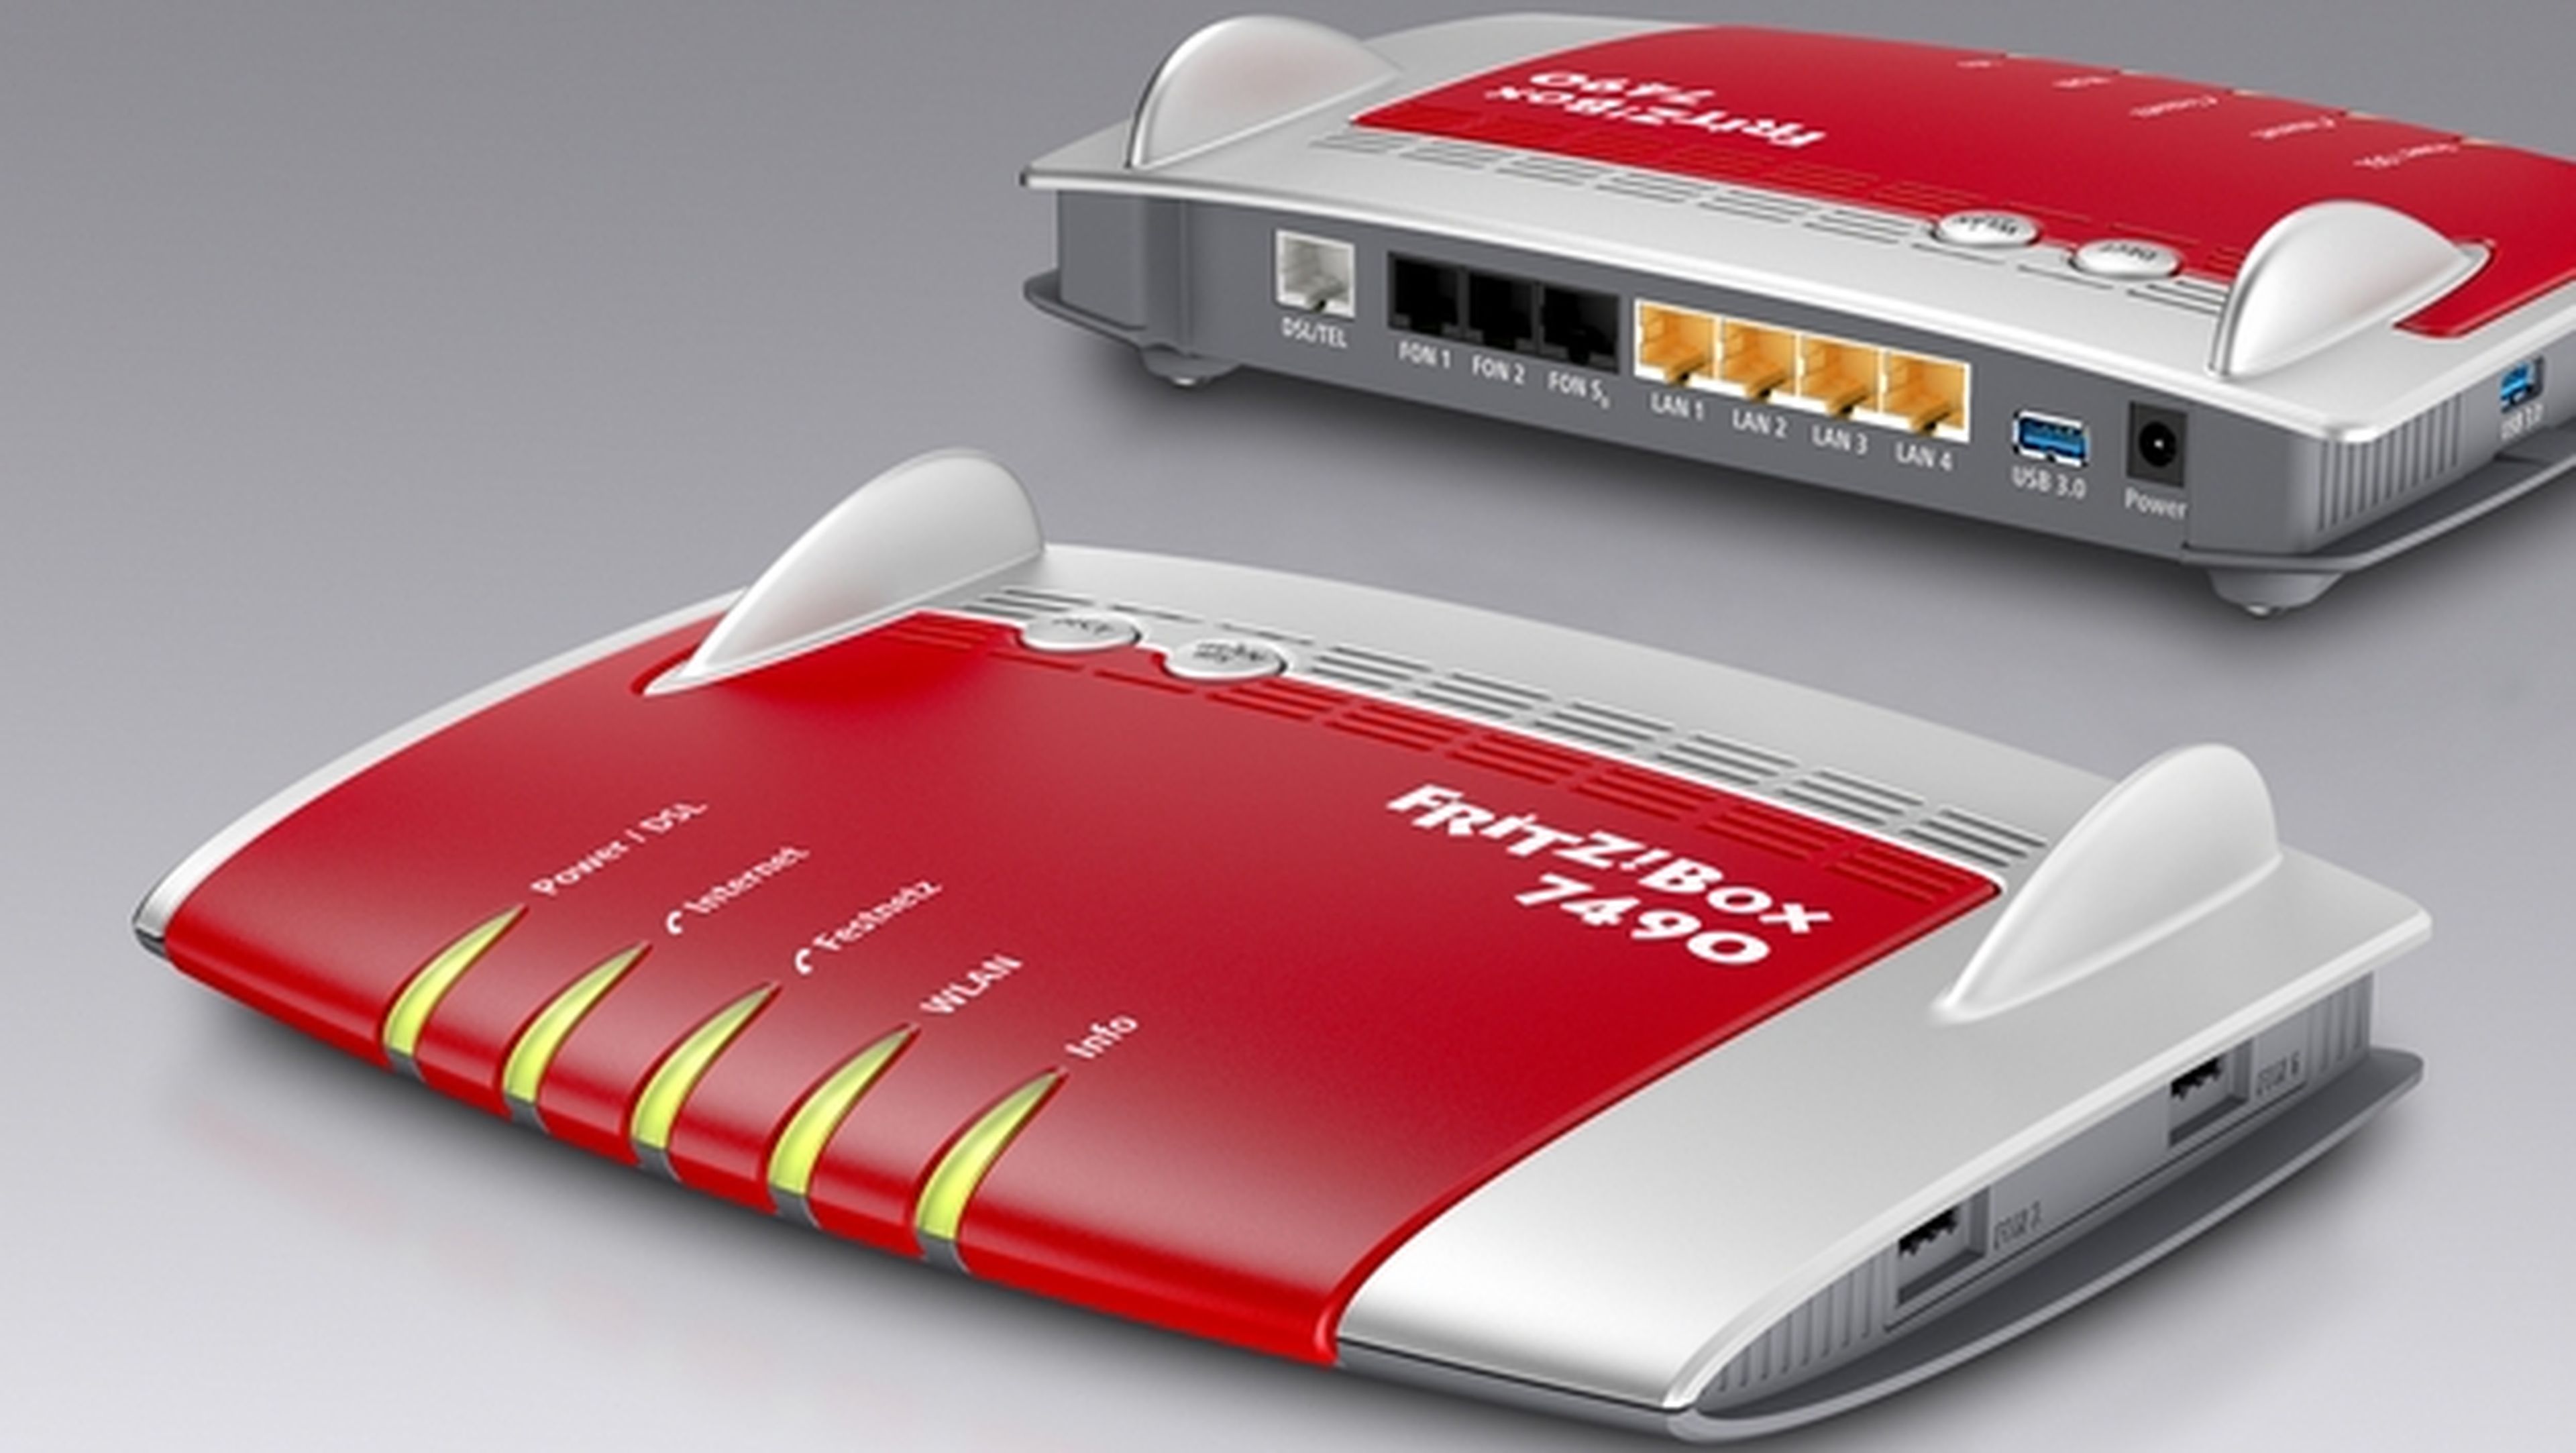 FRITZ!Box 7490, el router DSL con nueva tecnología WiFi AC, dos redes inalámbricas simultáneas, tres flujos de datos, máximo alcance y máxima seguridad, al ser compatible con redes WiFi encriptadas